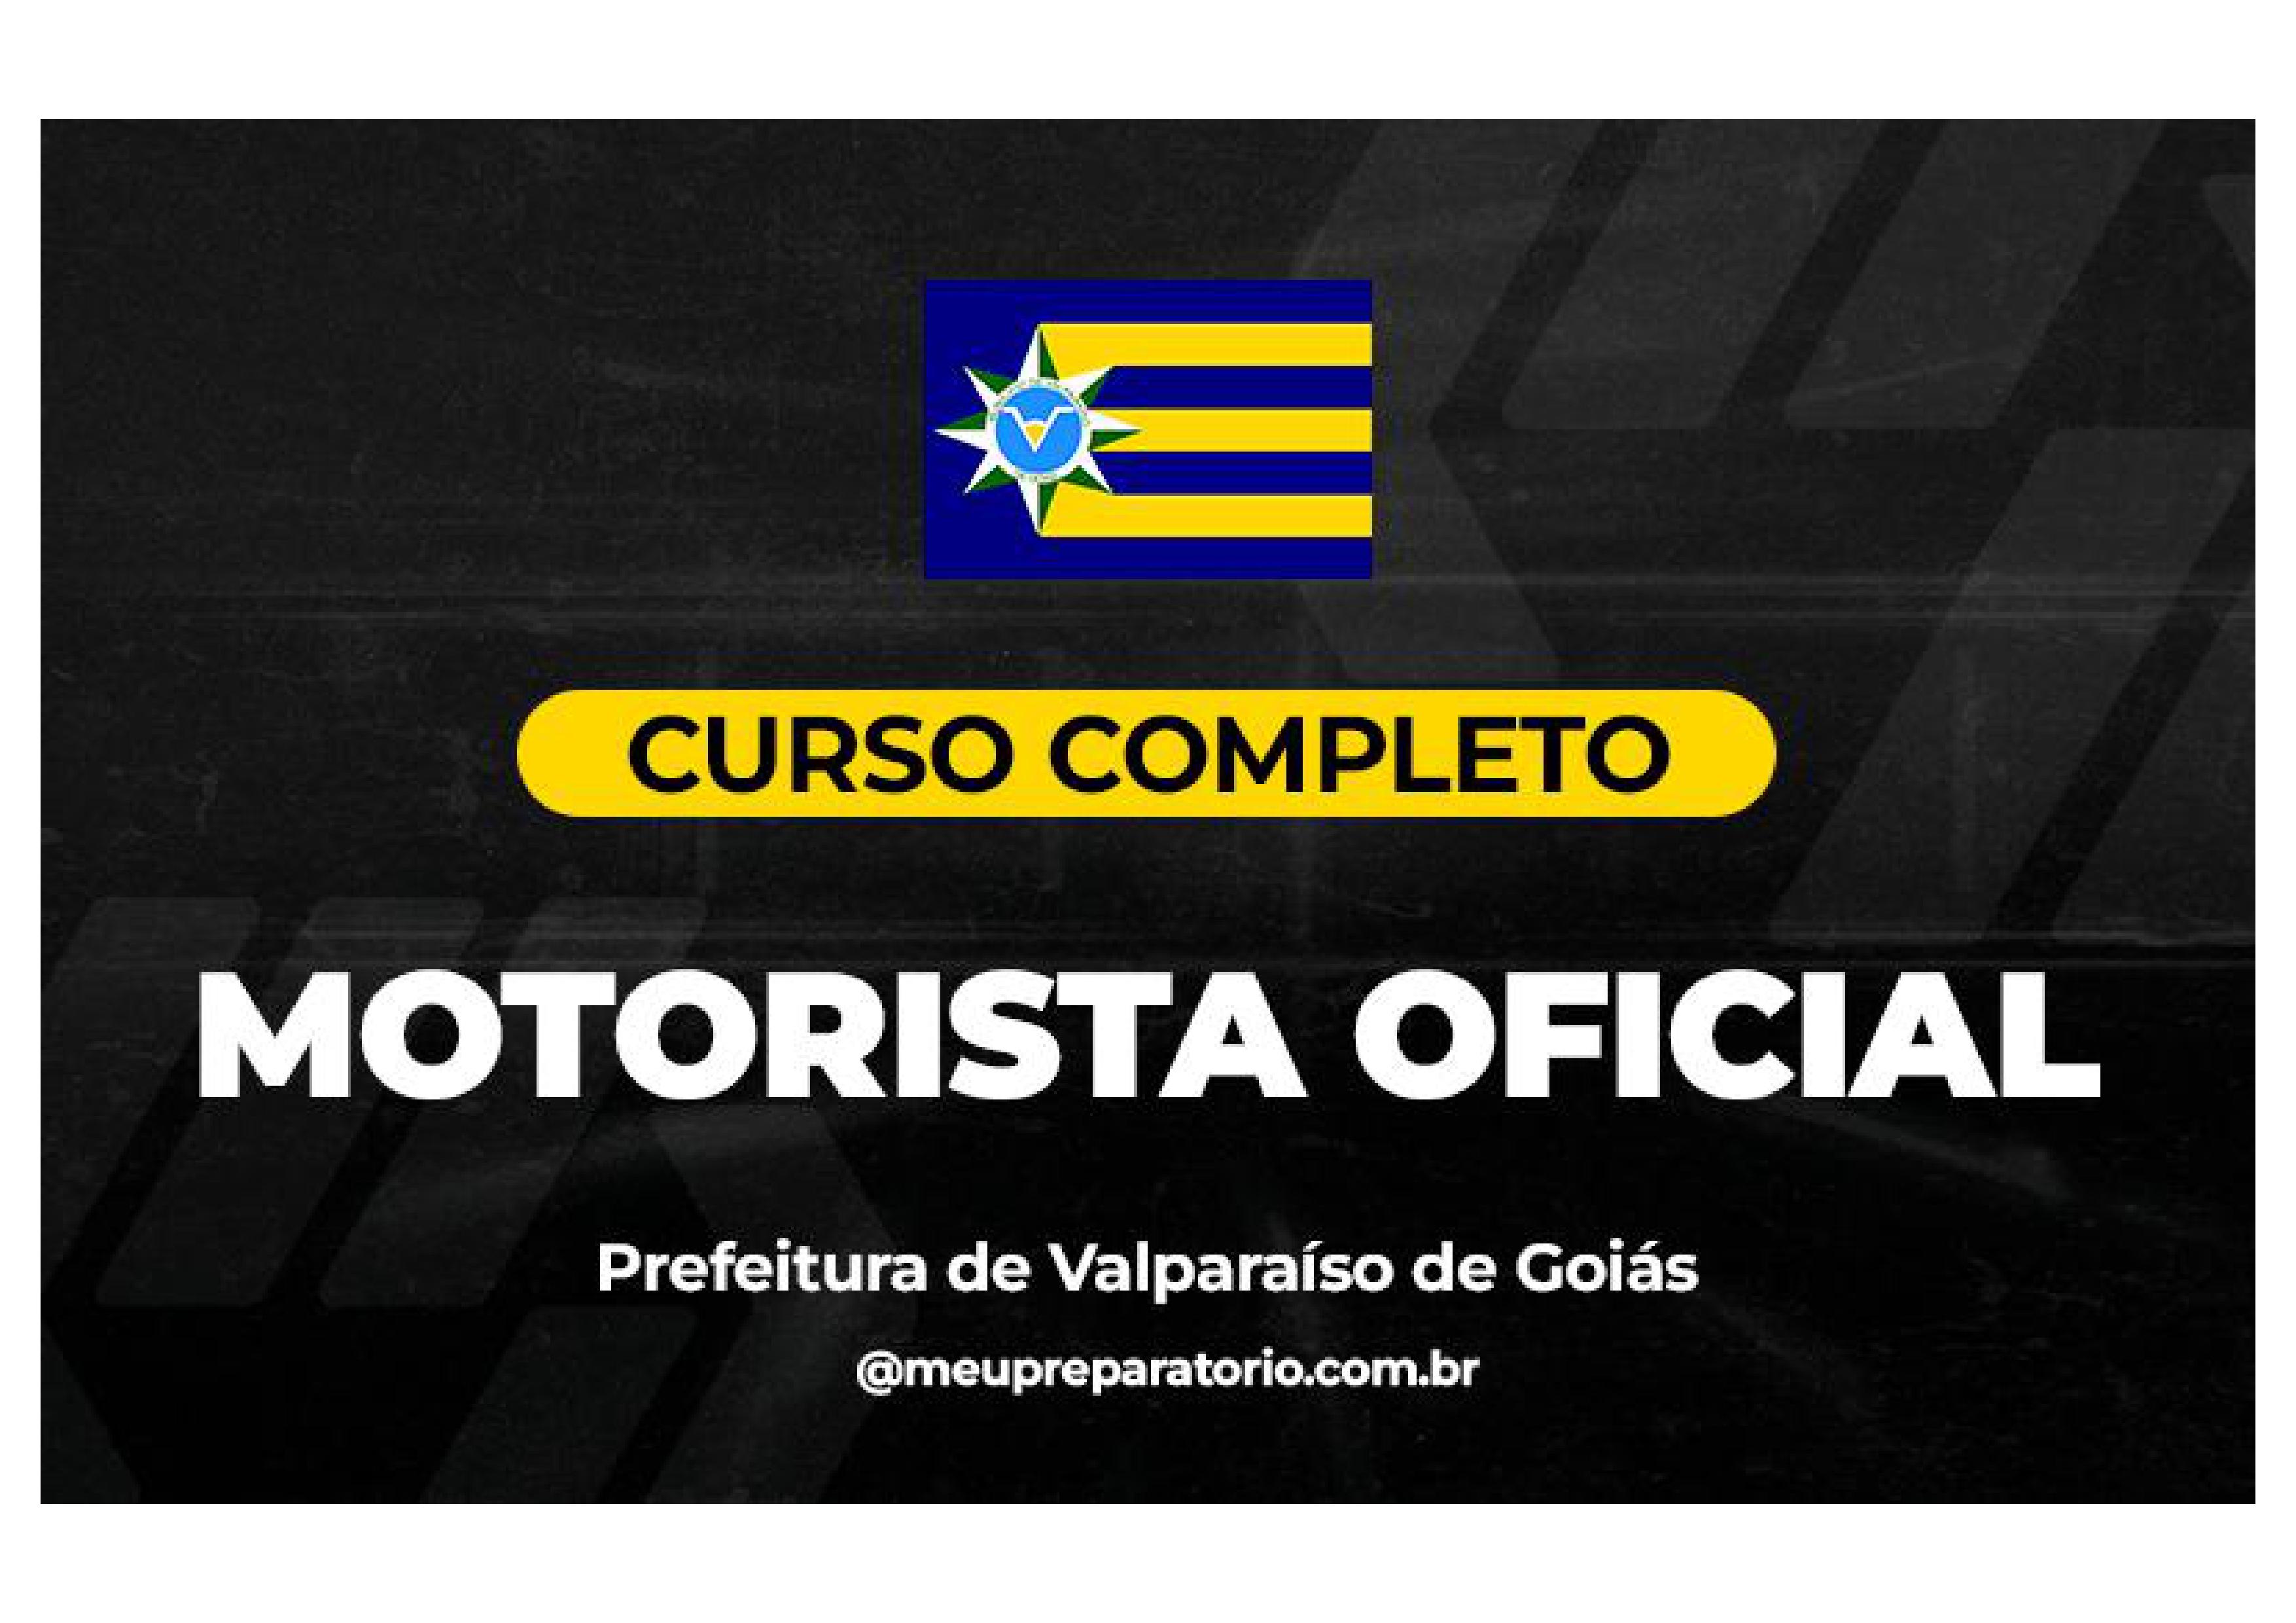 Motorista Oficial - Valparaíso (GO)